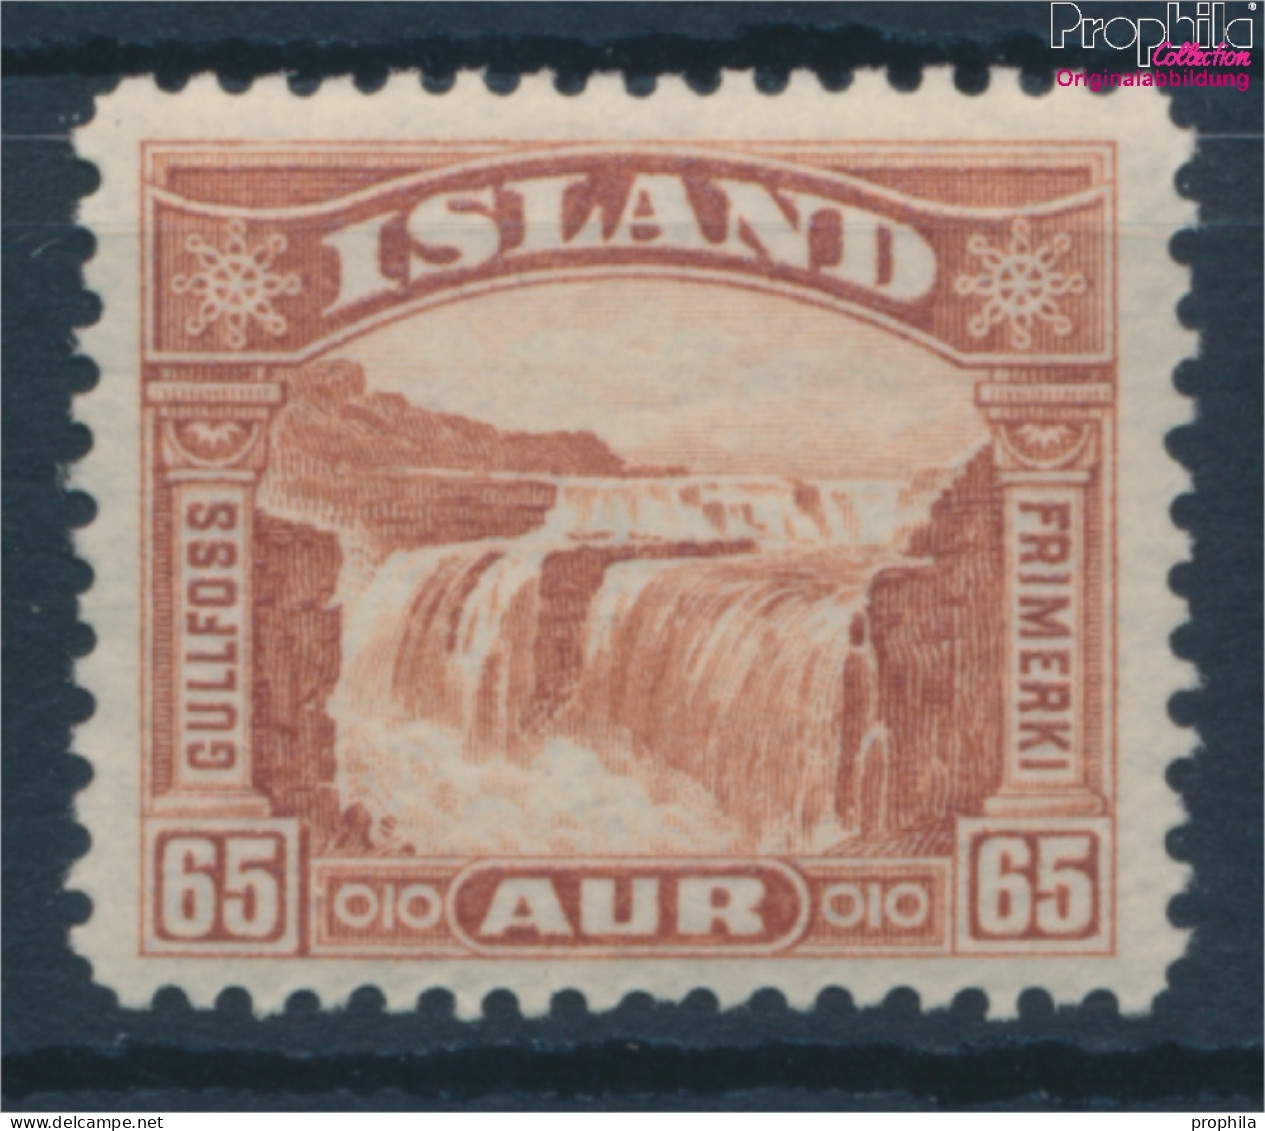 Island 154 Postfrisch 1931 Gullfoss (10293704 - Ongebruikt